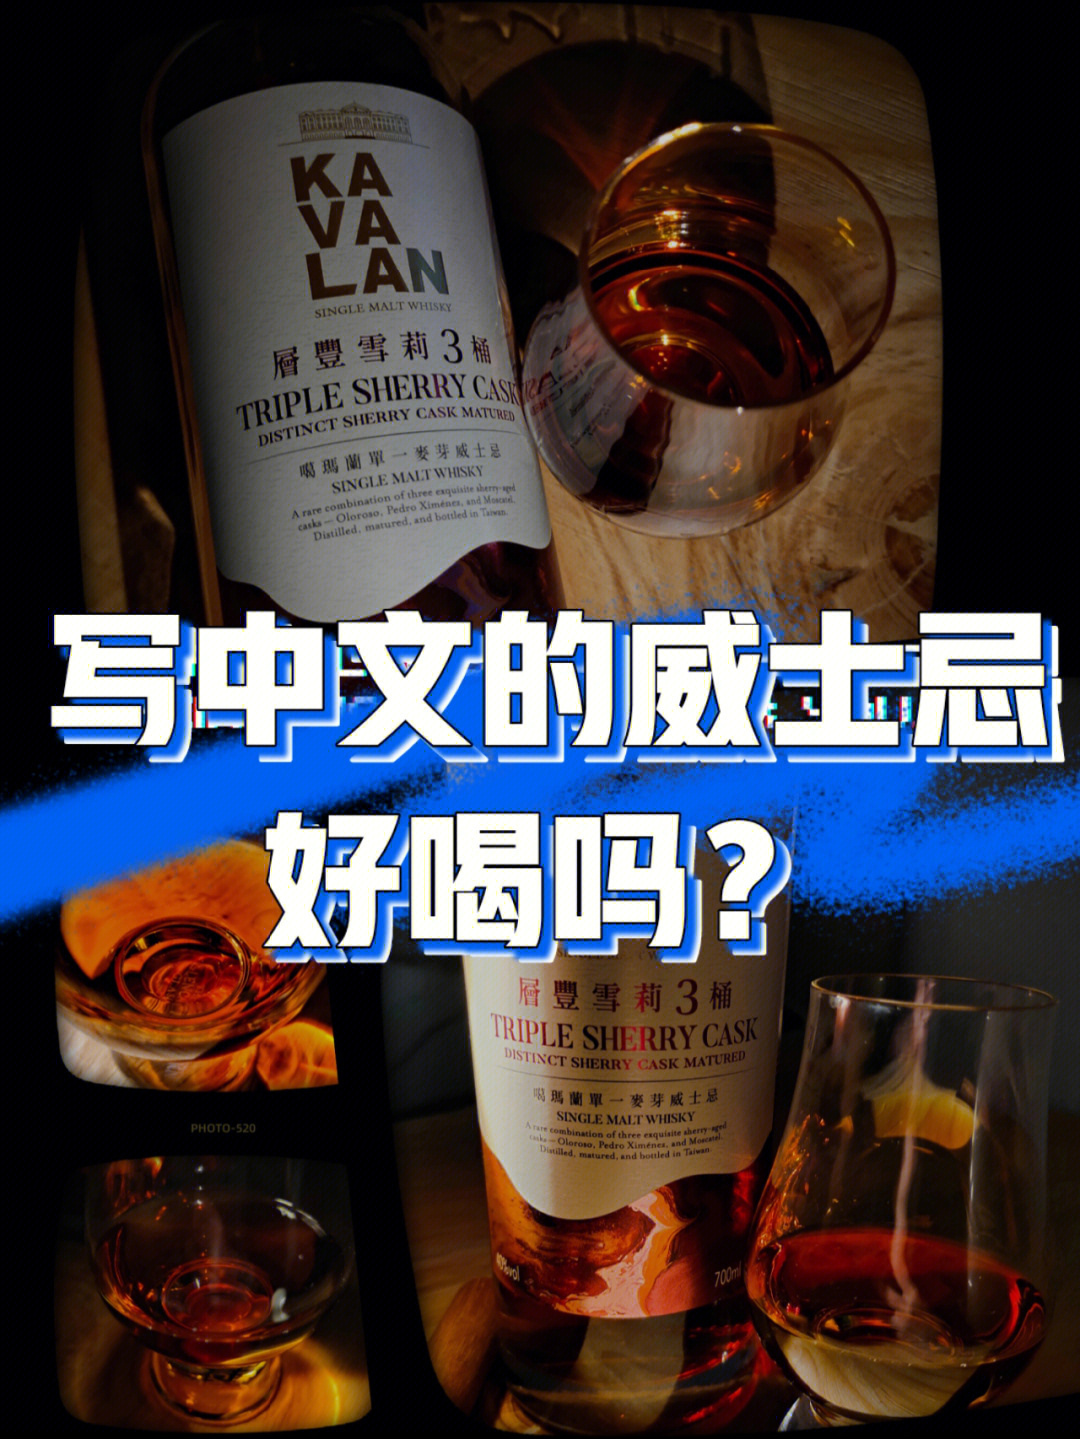 我朋友说写中文的威士忌能喝吗